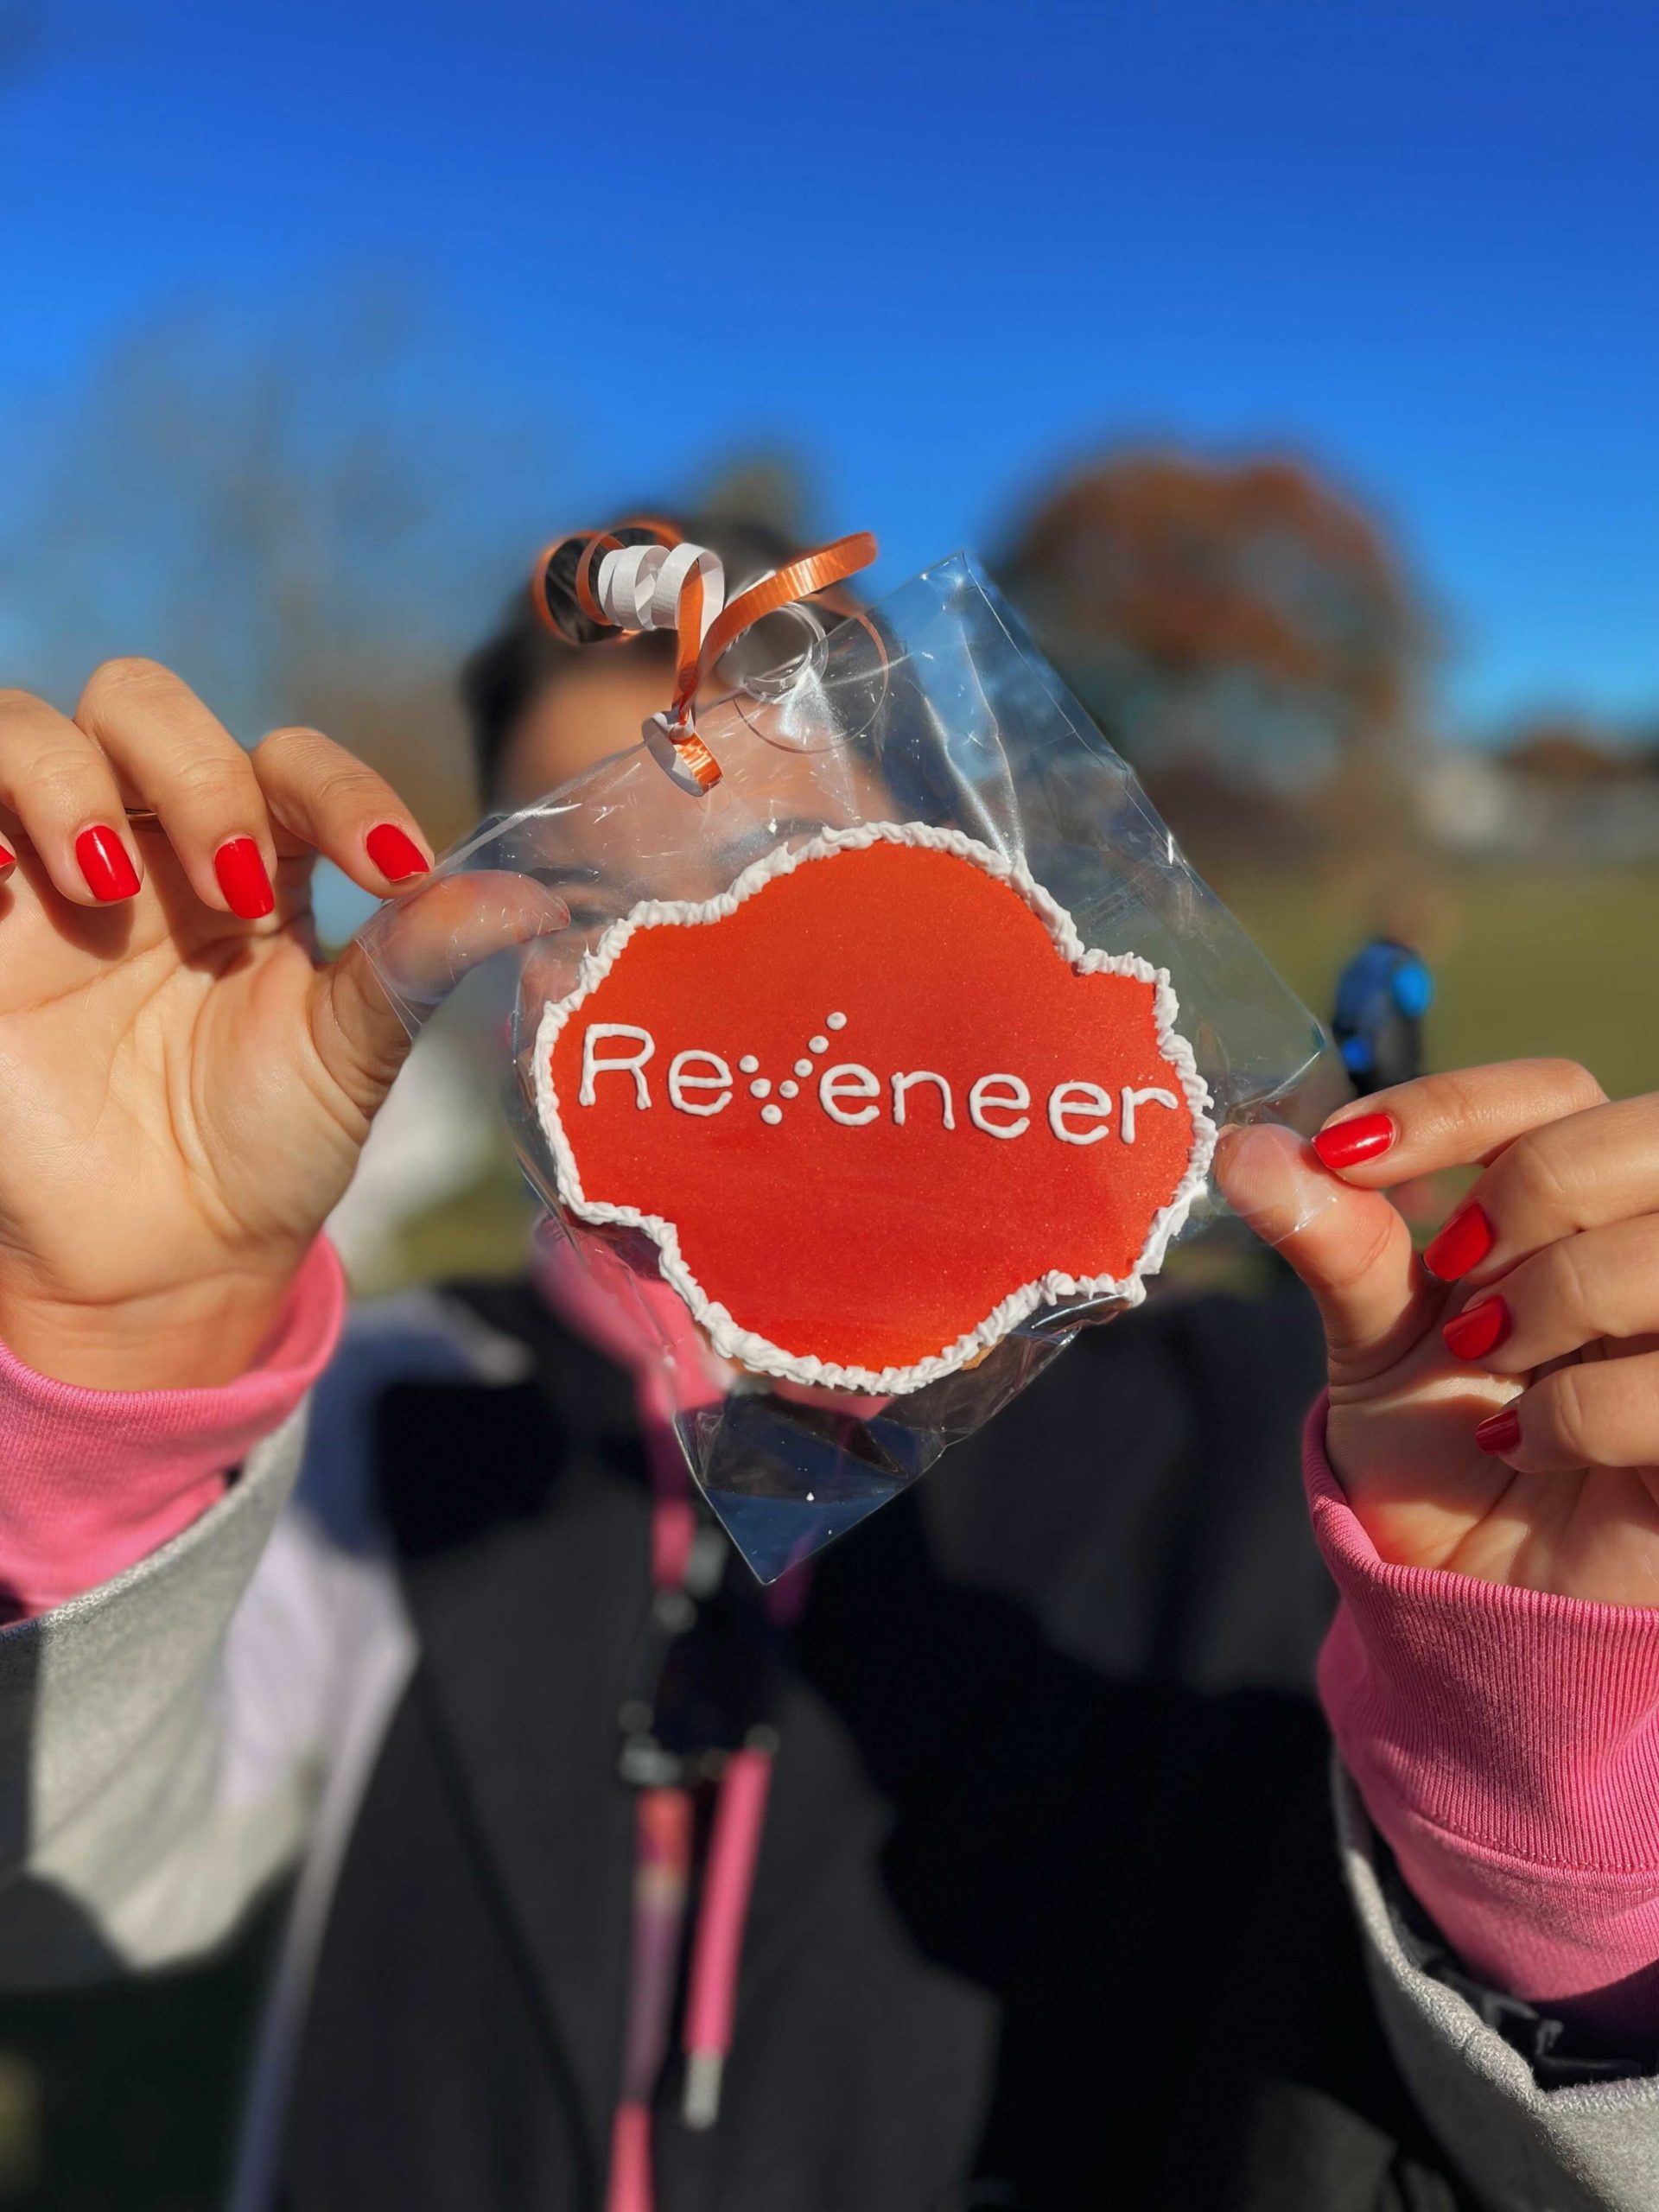 Reveneer employee holding a Reveneer logo cookie